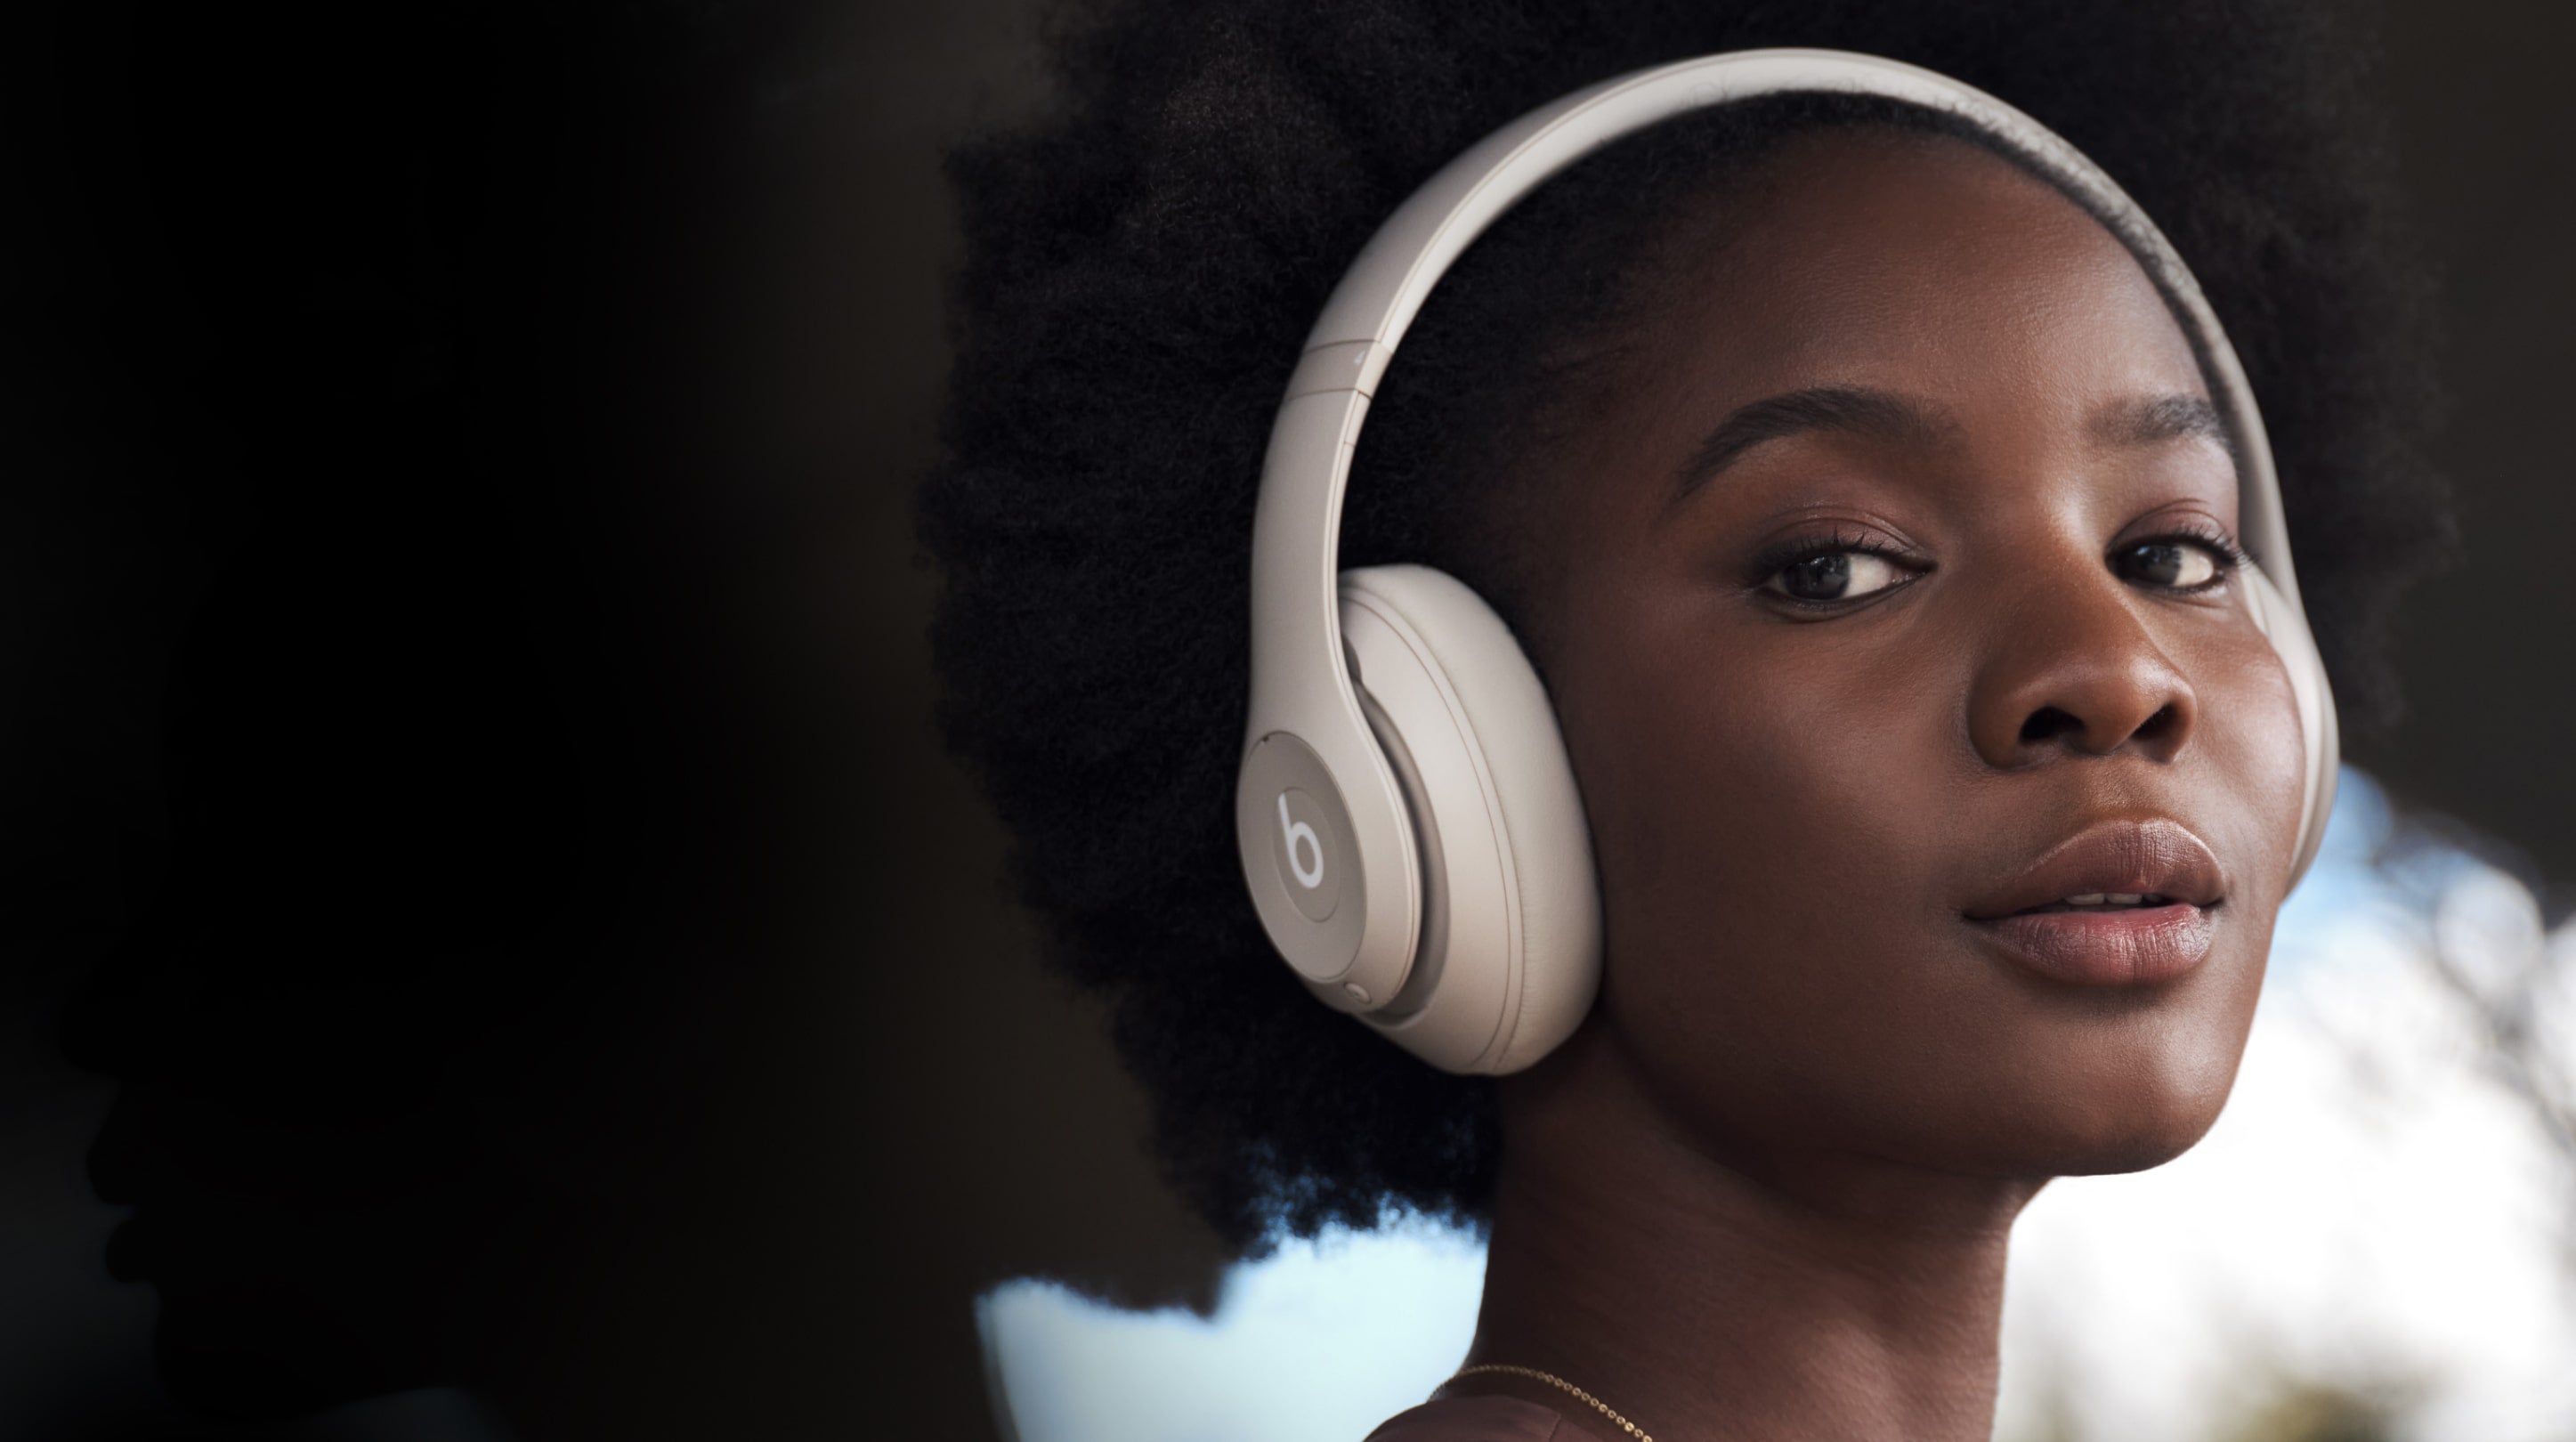 Beats Solo 3 headphones sale: 50% off